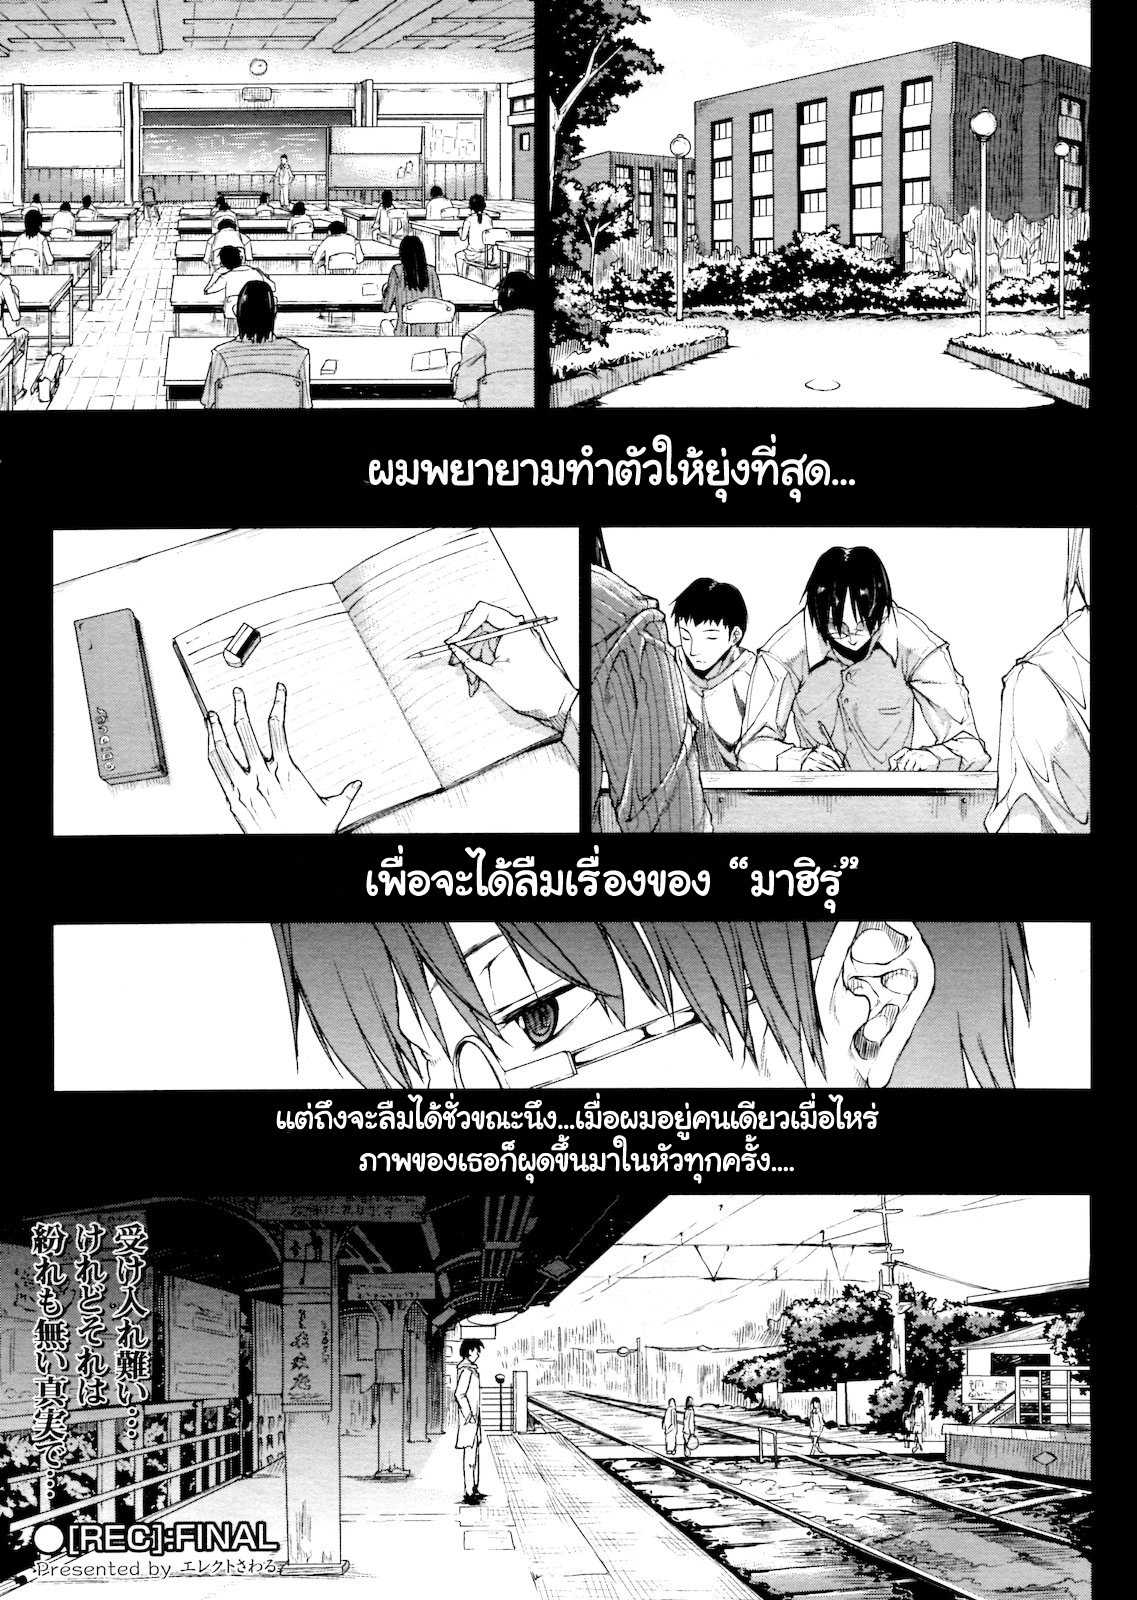 [Erect Sawaru] [REC] ch1-3 (Thai) (Complete) 